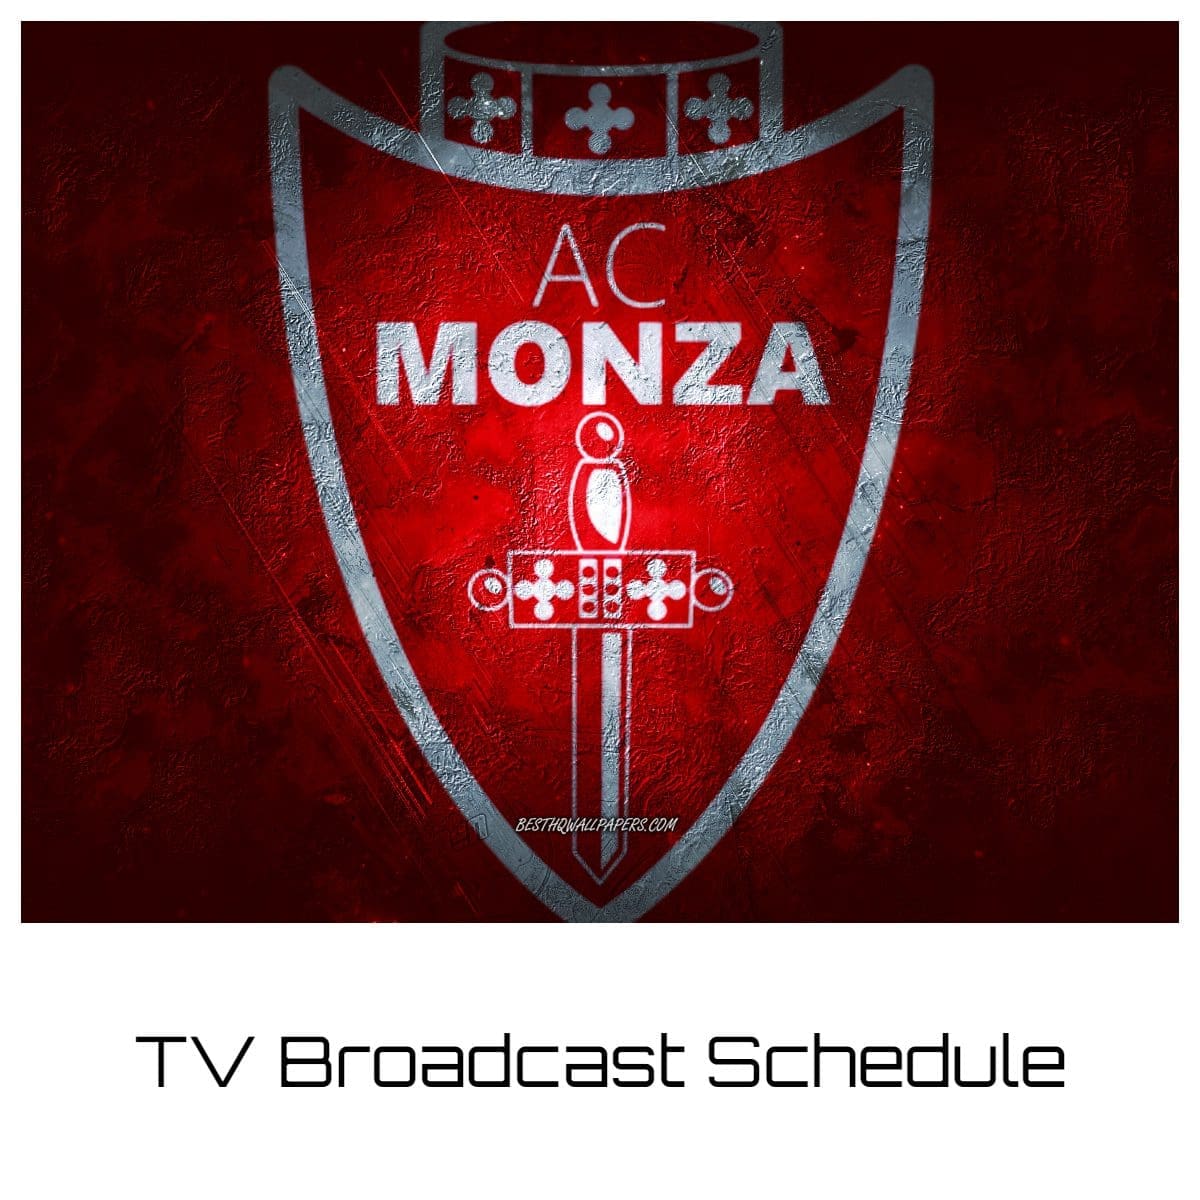 Monza TV Broadcast Schedule